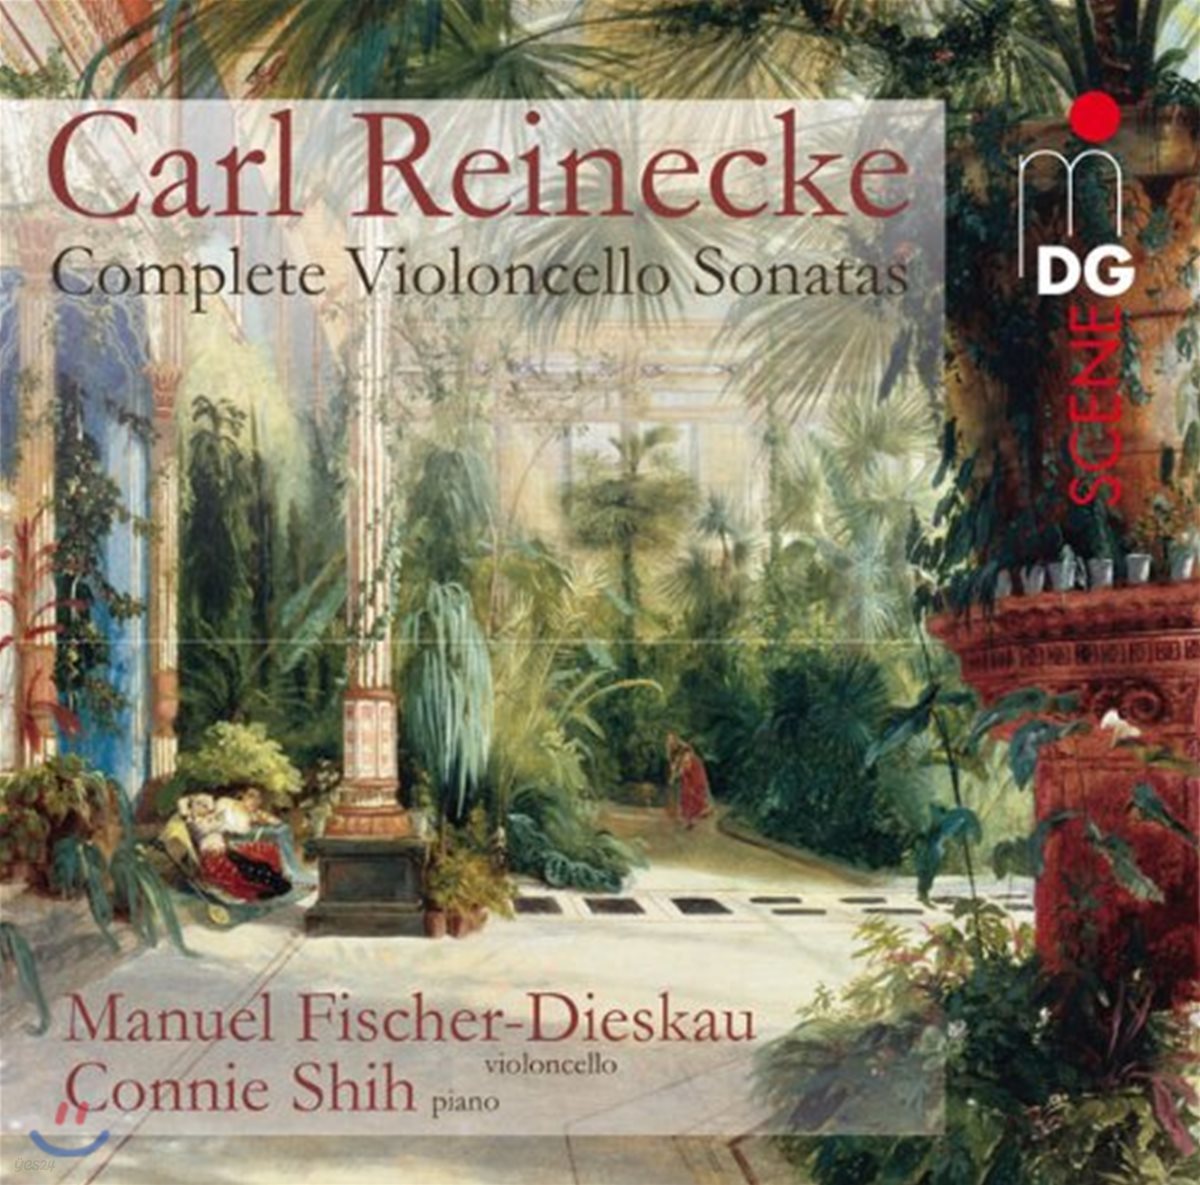 Manuel Fischer-Dieskau 라이넥케: 첼로 소나타 전곡집 (Reinecke: Complete Cello Sonatas)